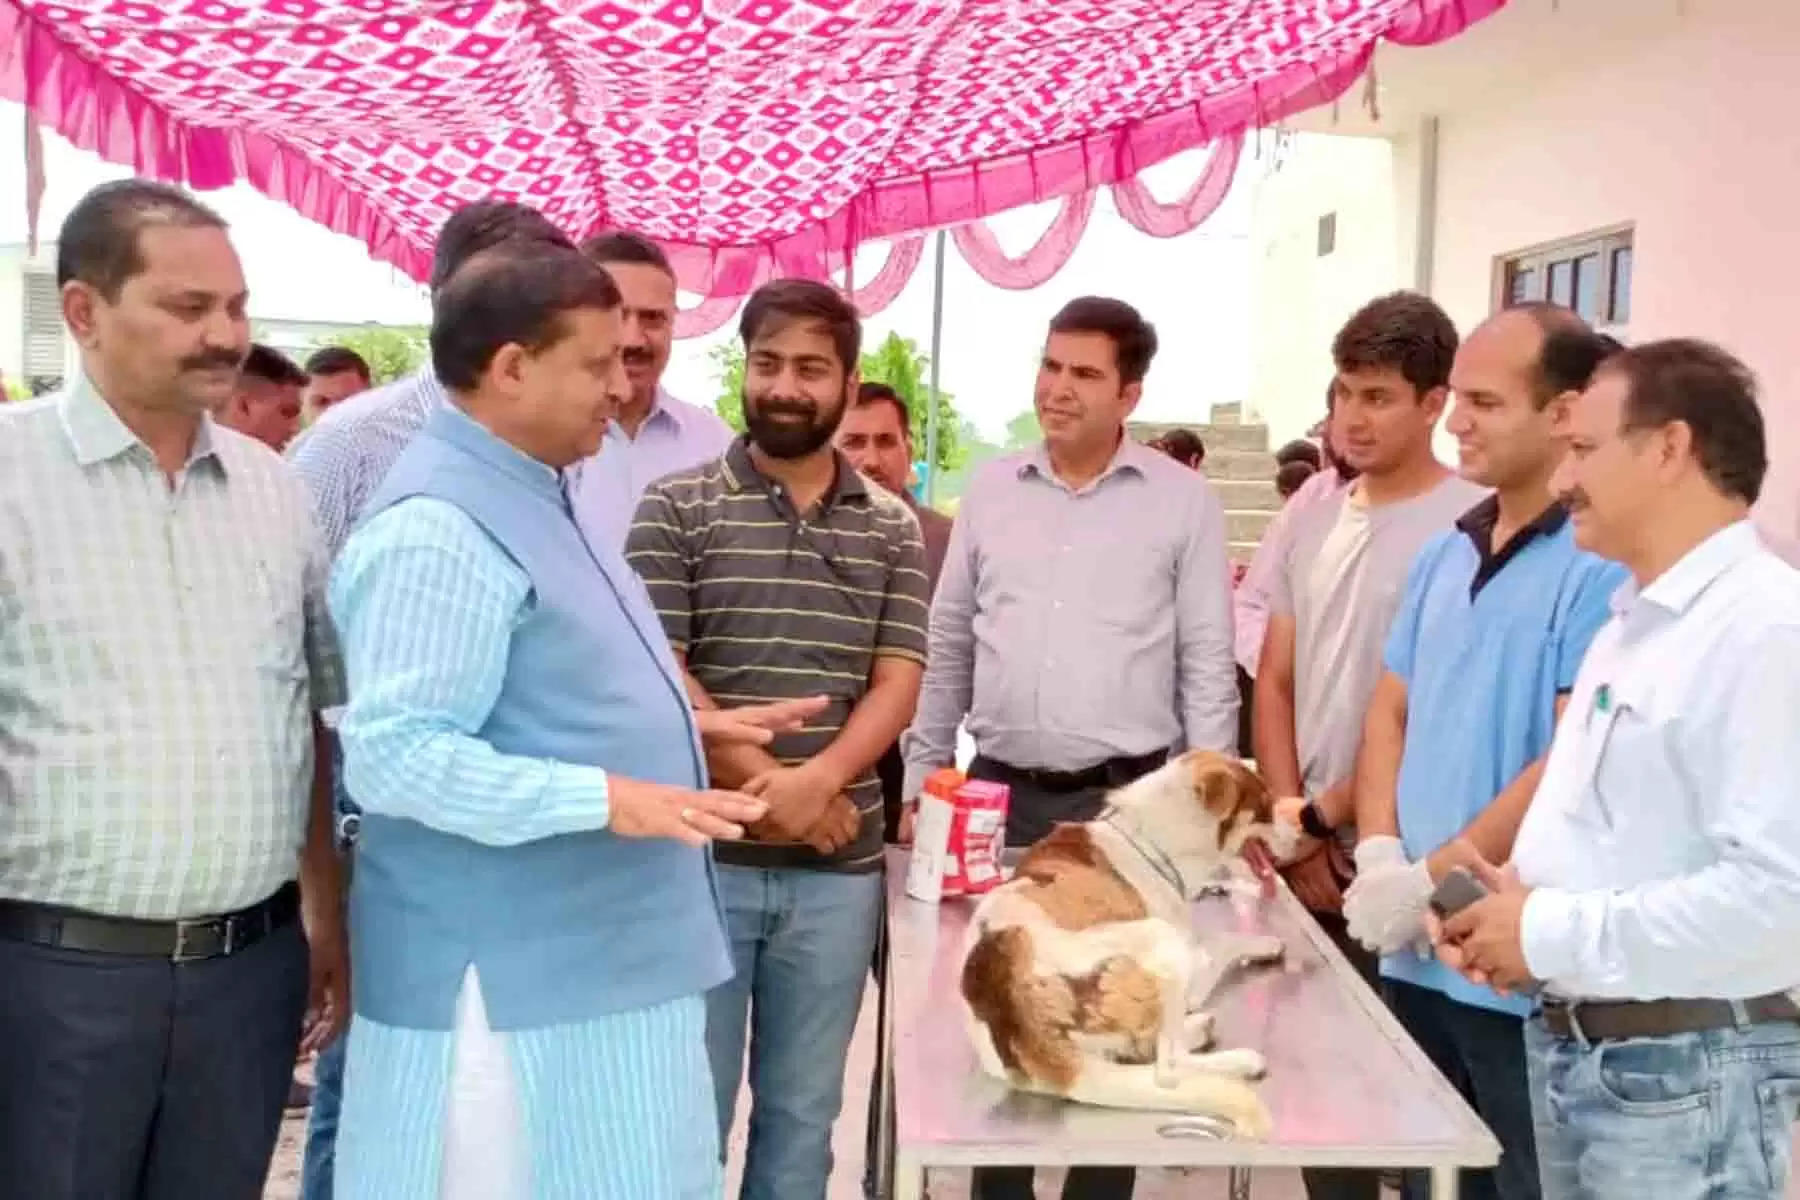 ग्रामीण विकास, पंचायती राज, कृषि, मत्स्य तथा पशु पालन मंत्री वीरेंद्र कंवर ने शुक्रवार को आंचलिक पशु चिकित्सालय बरनोह में एक दिवसीय एंटी रैबीज़ टीकाकरण शिविर का शुभारंभ किया। इस शिविर में 42 कुत्तों का टीकाकरण किया गया और विशेषज्ञ डॉक्टरों द्वारा कुत्तों के स्वास्थ्य की जांच की गई। शिविर में कुत्तों के मालिकों को फ्री दवाएं व सप्लीमेंट भी प्रदान किए गए। इस कैंप में उपस्थित व्यक्तियों को कुत्तों से संबंधित बीमारियों के बारे में जागरूक भी किया गया।